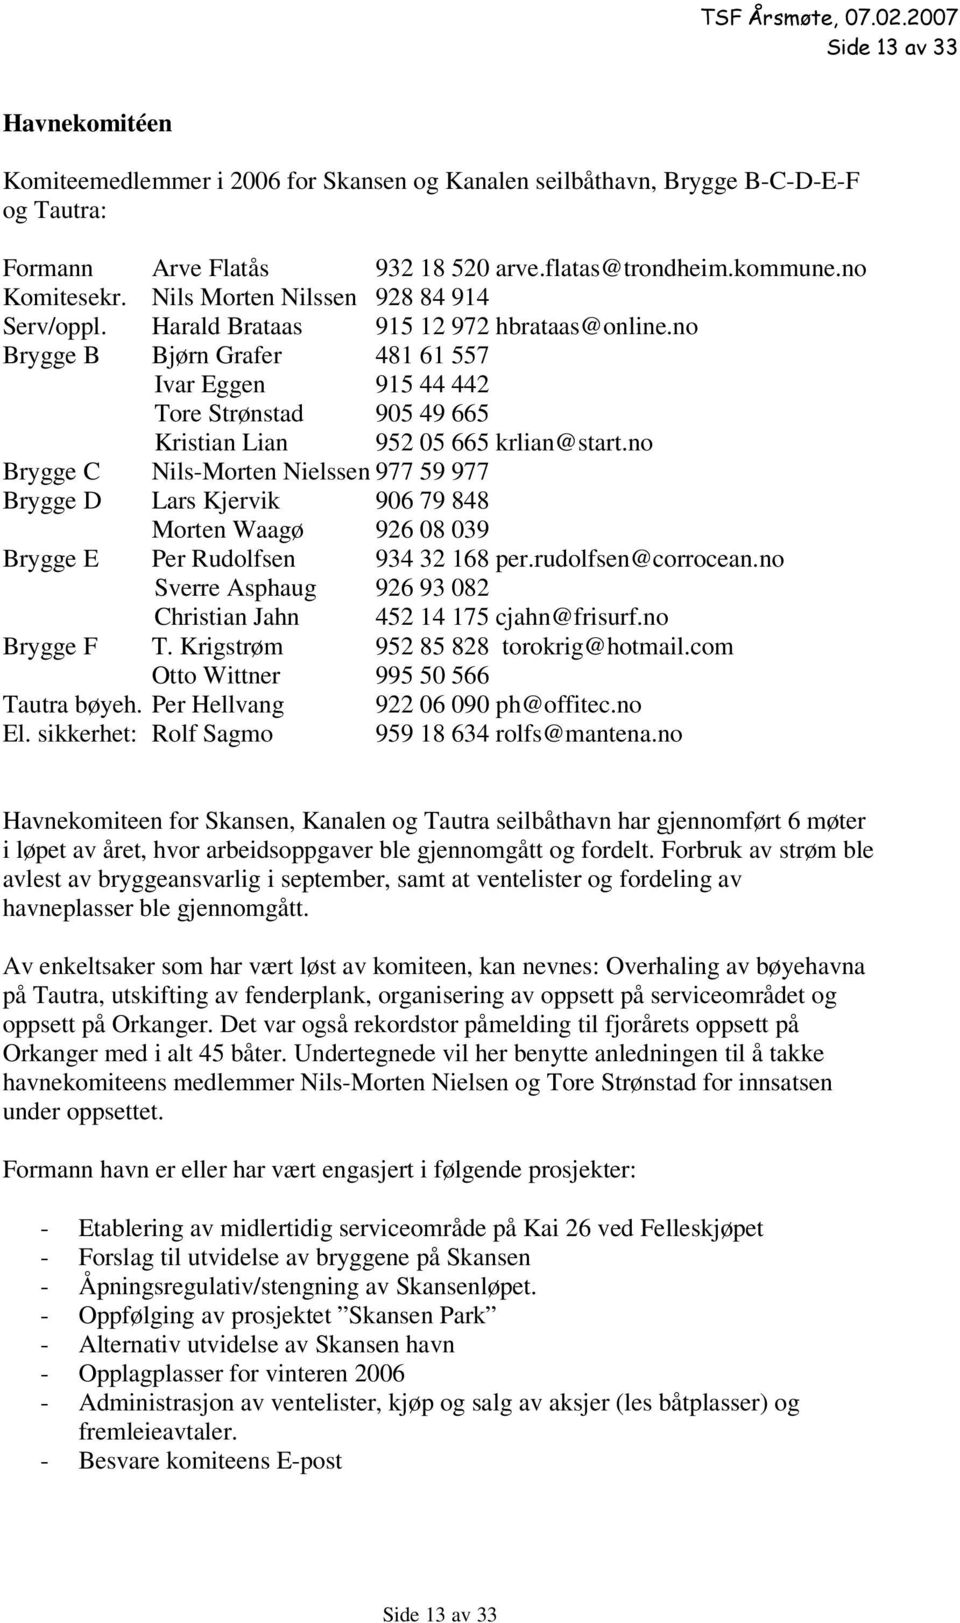 no Brygge B Bjørn Grafer 481 61 557 Ivar Eggen 915 44 442 Tore Strønstad 905 49 665 Kristian Lian 952 05 665 krlian@start.